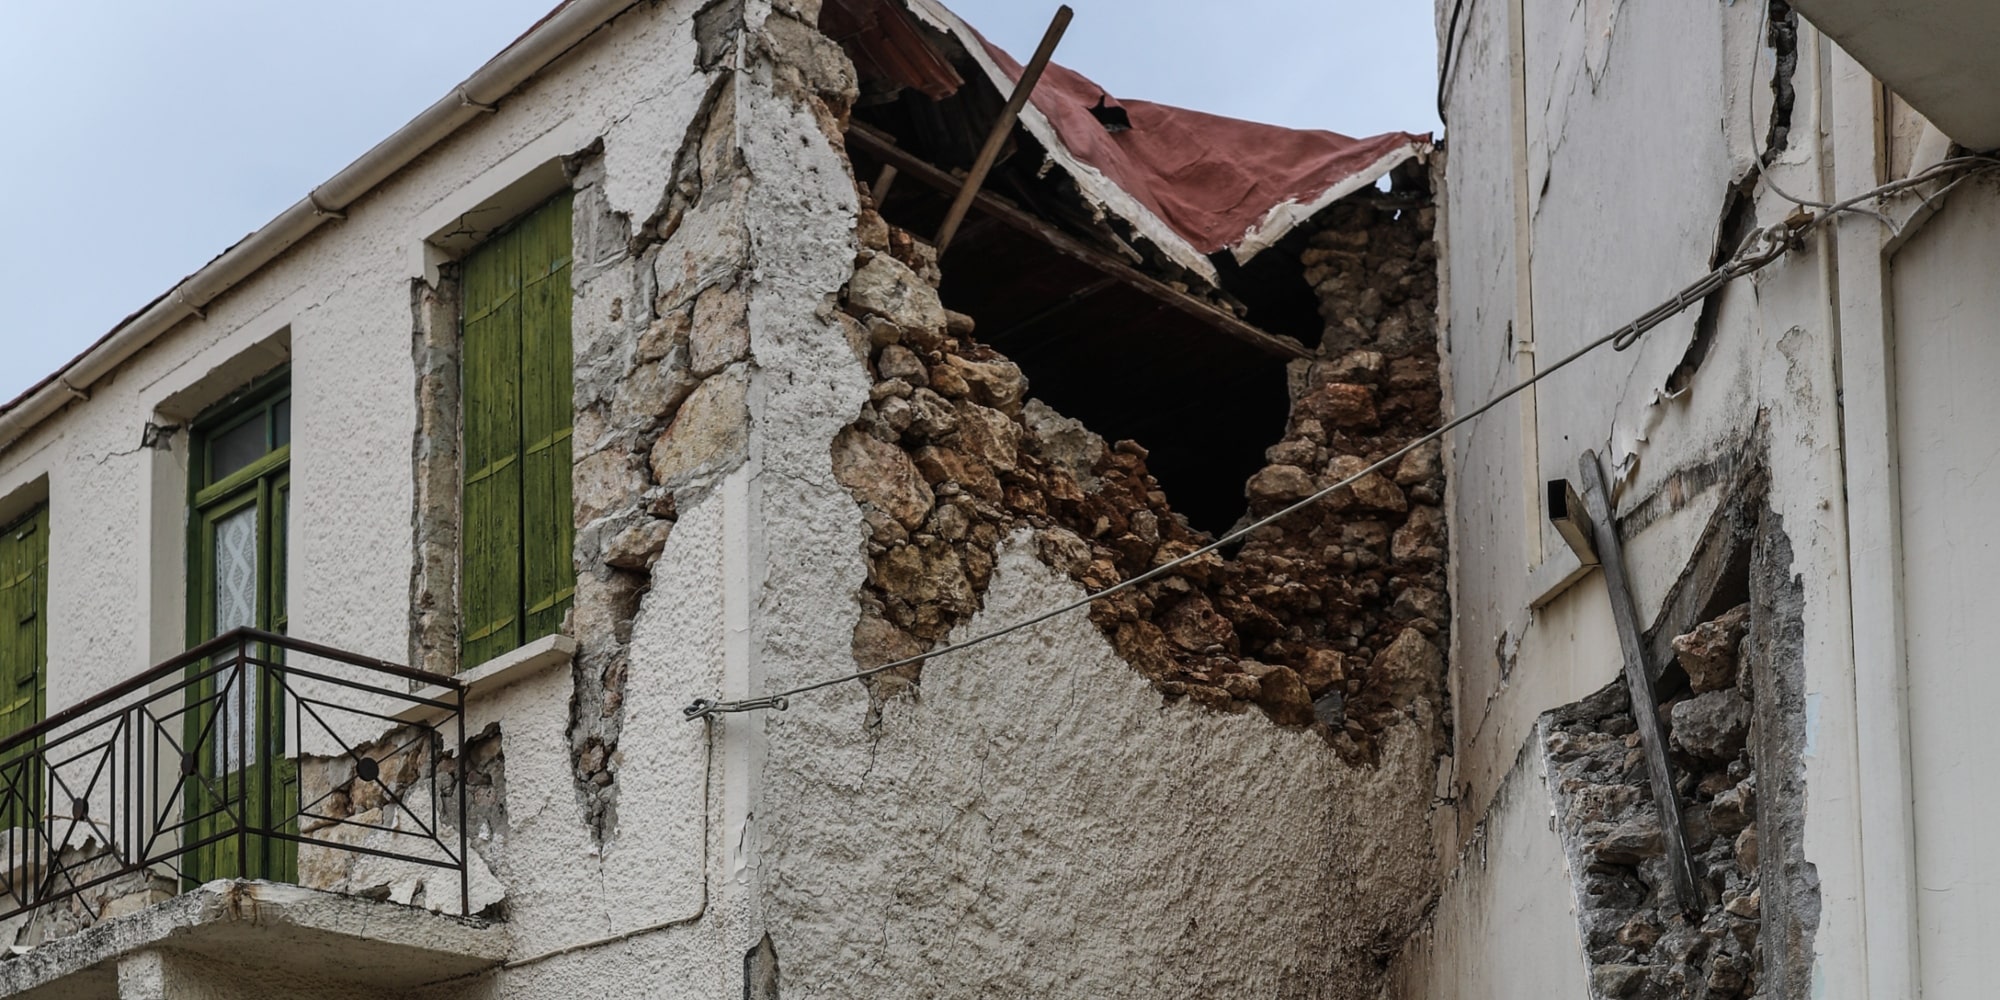 Σπίτι στο Ηράκλειο Κρήτης που χτυπήθηκε από τον σεισμό